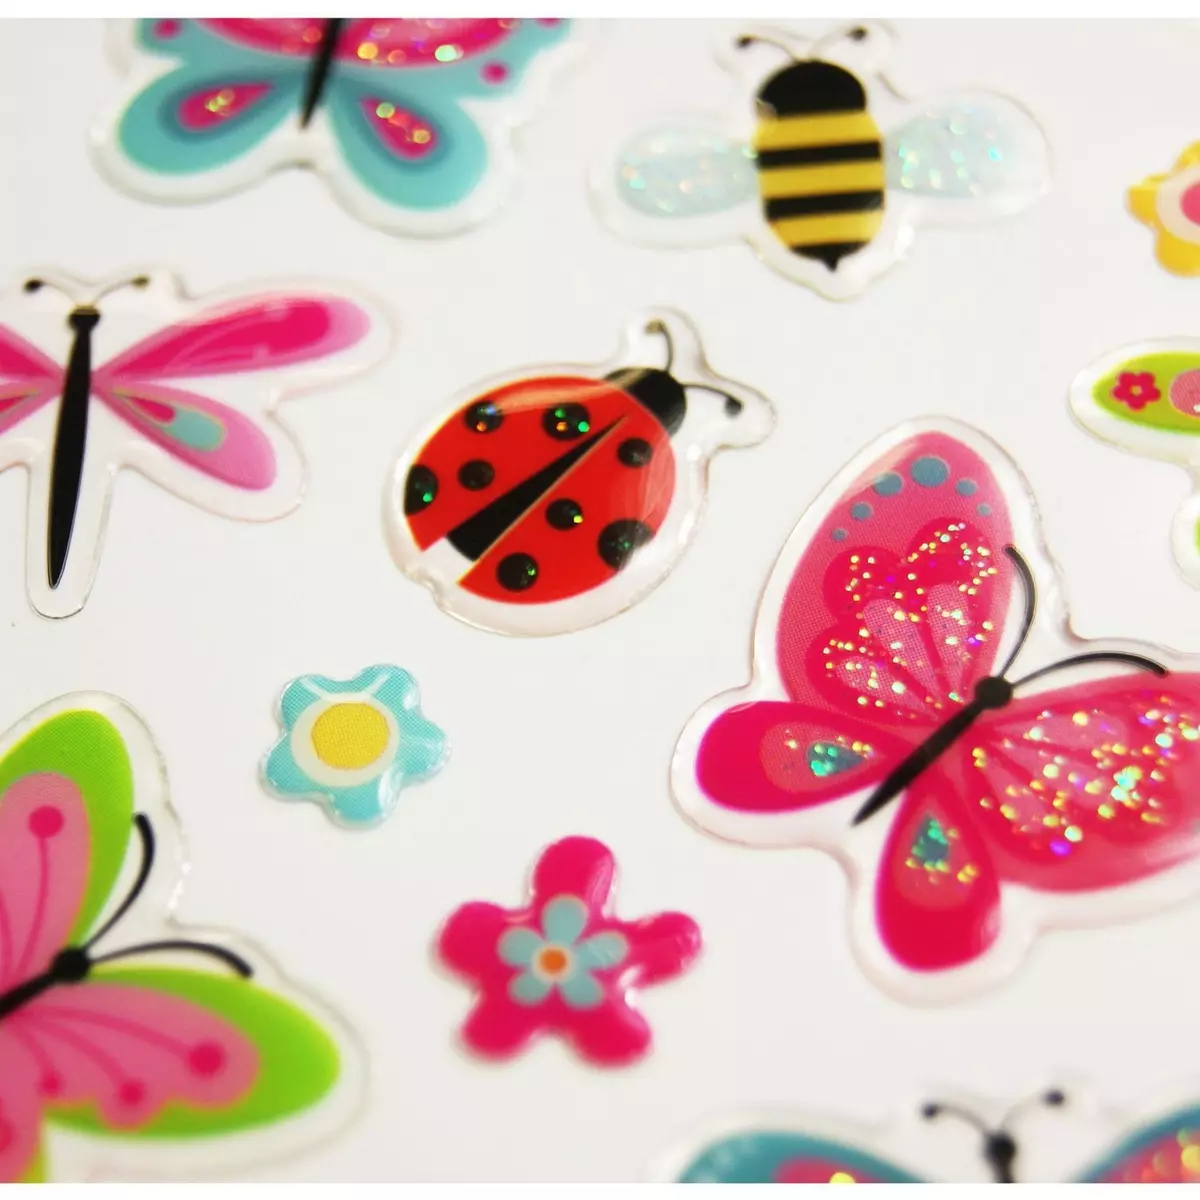  Autocollants - Papillons à paillettes - Époxy transparent - 2,2 cm